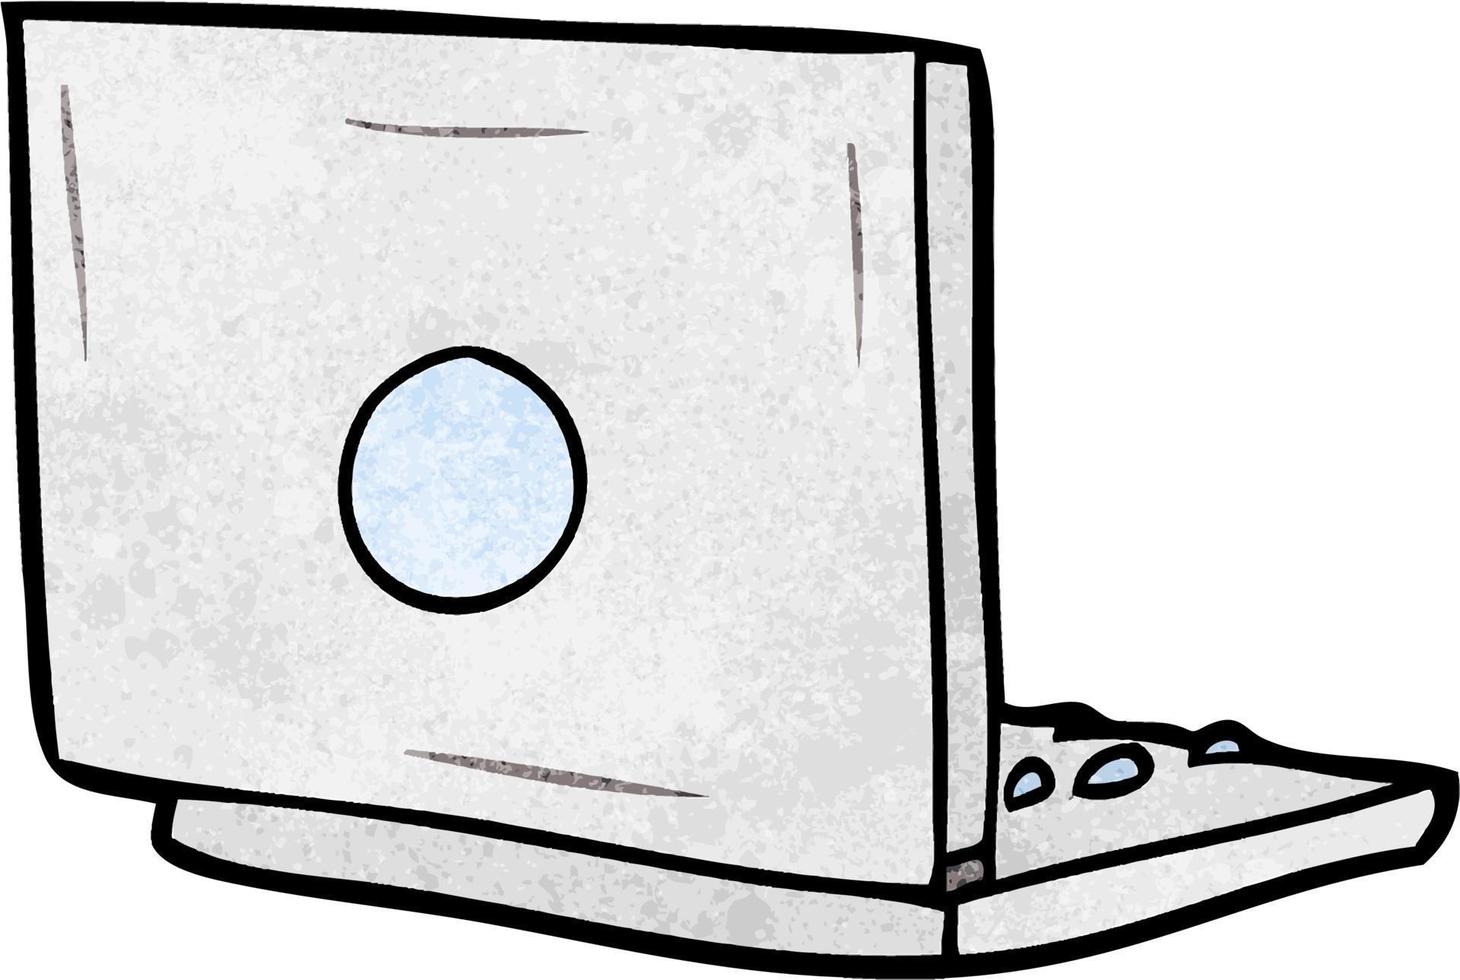 ordinateur portable mignon dessin animé texture grunge rétro vecteur